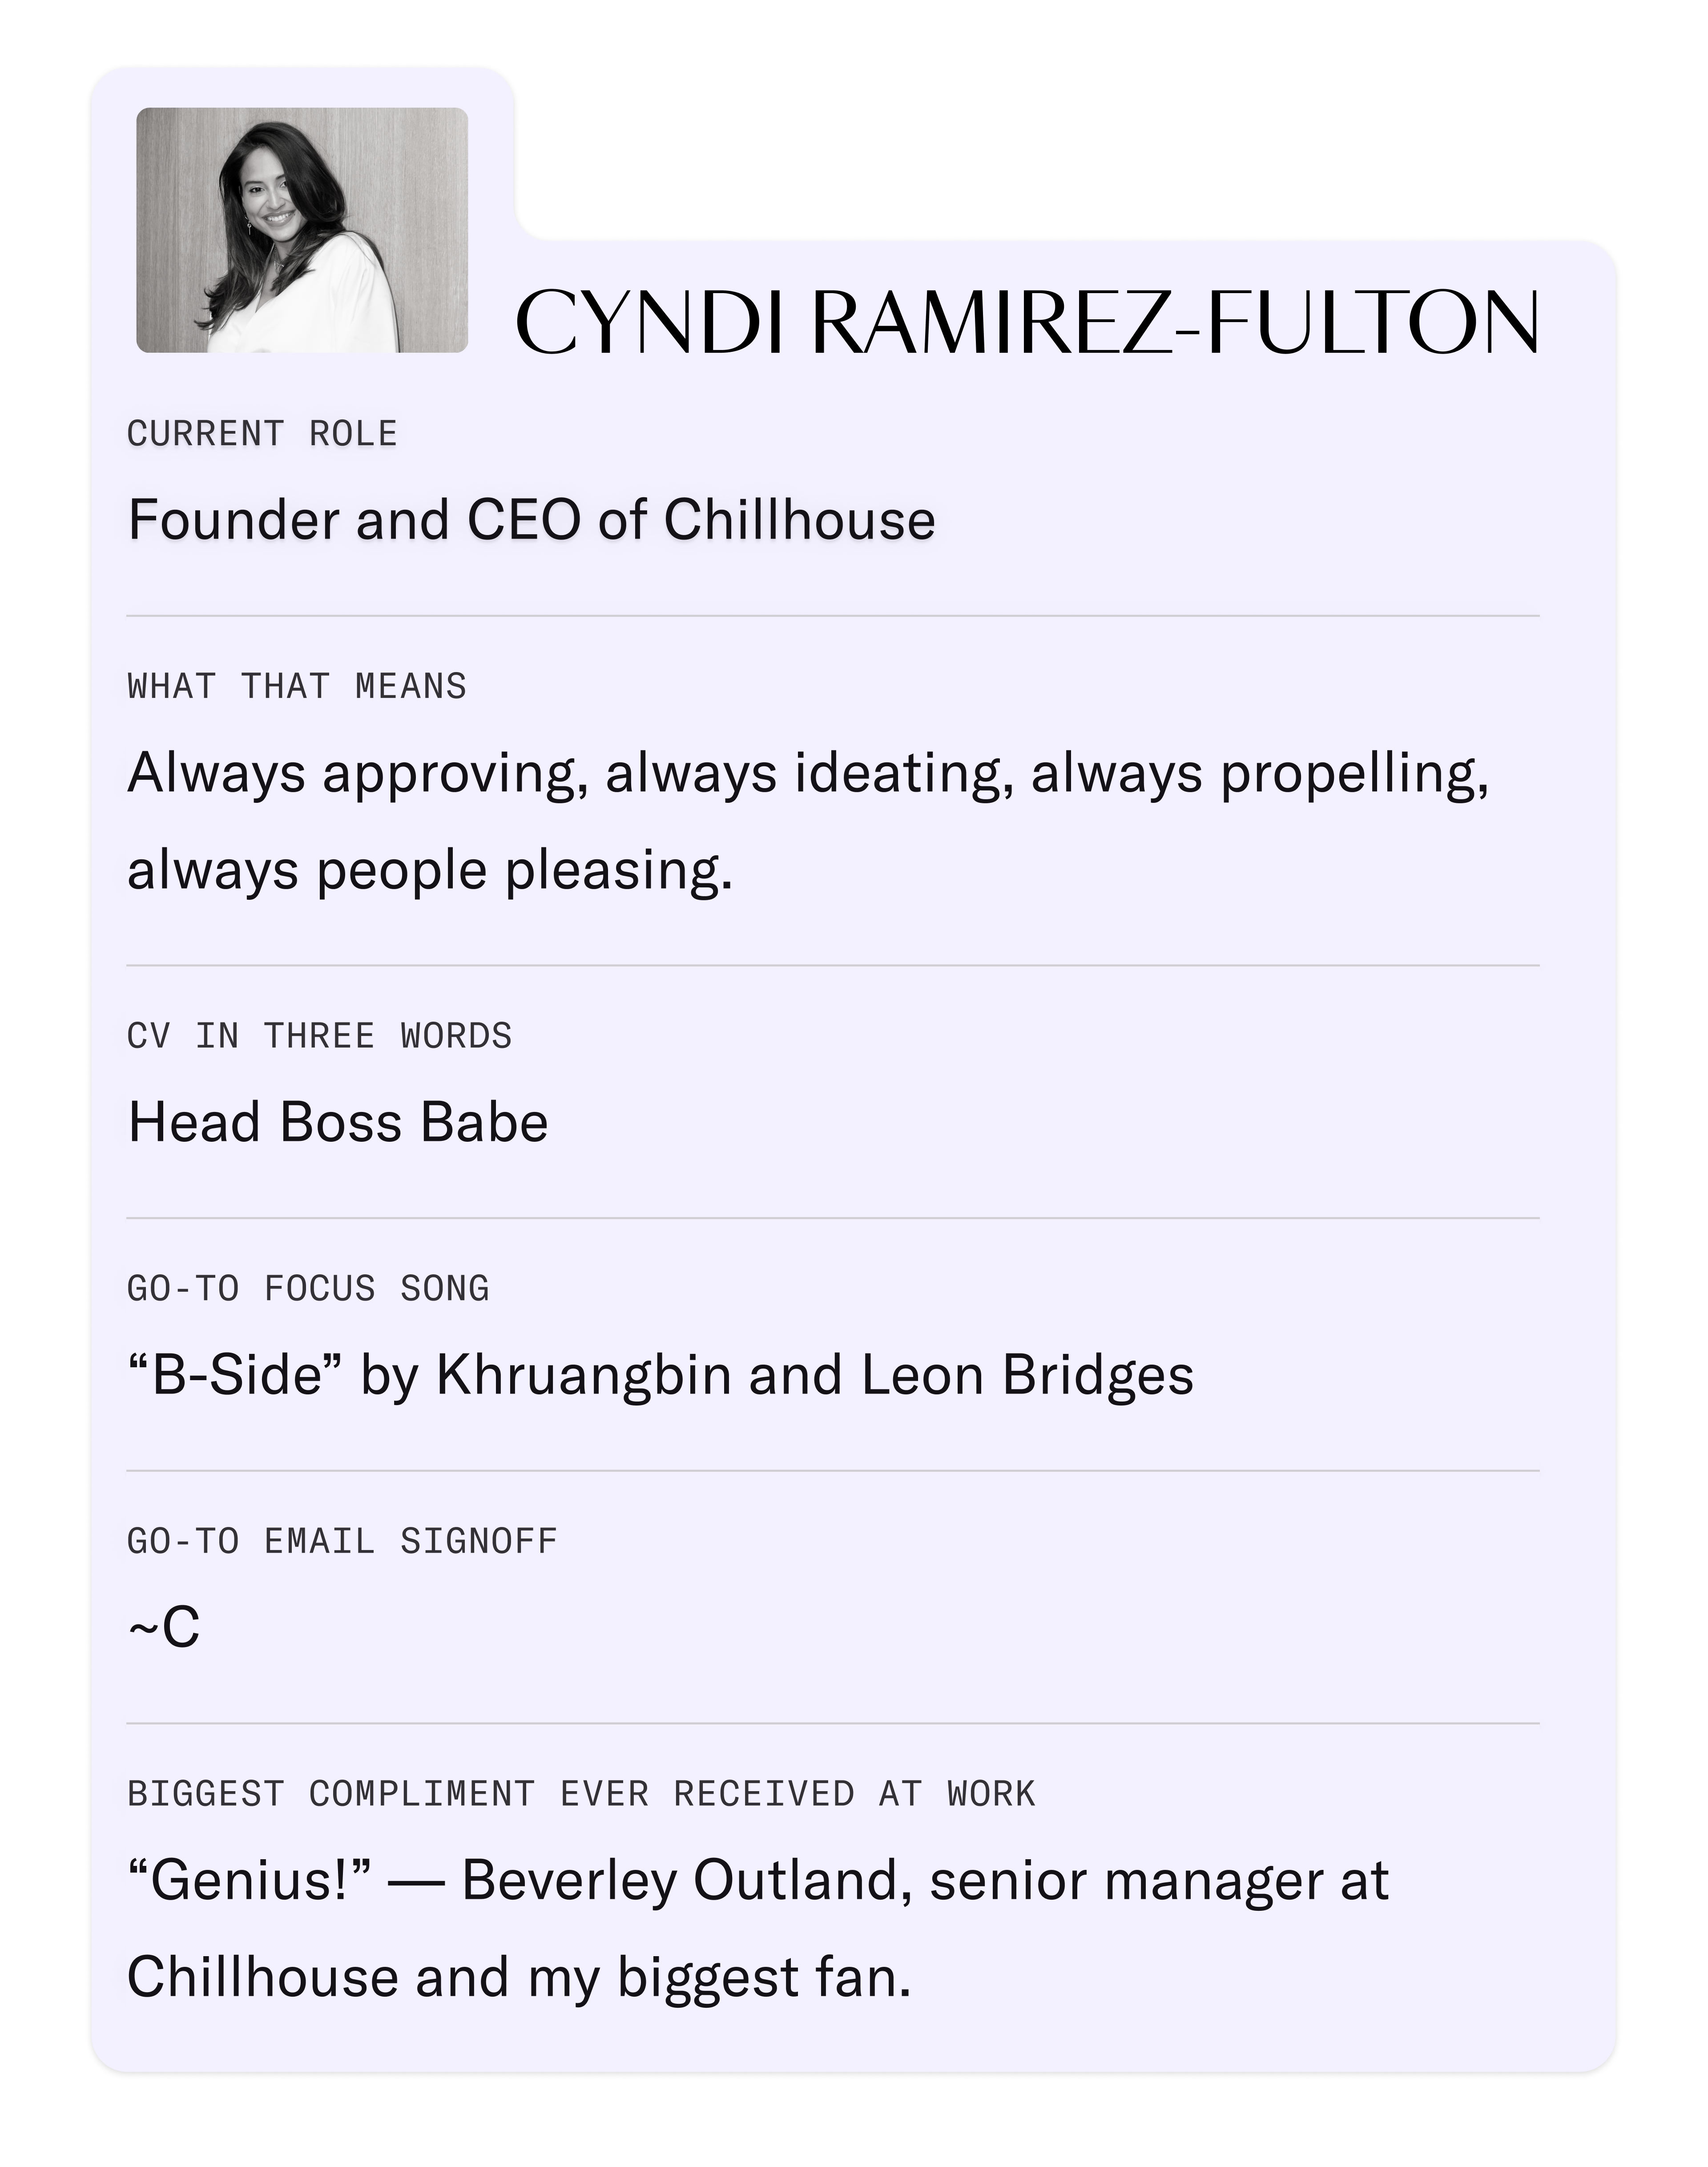 Cyndi Ramirez-Fulton